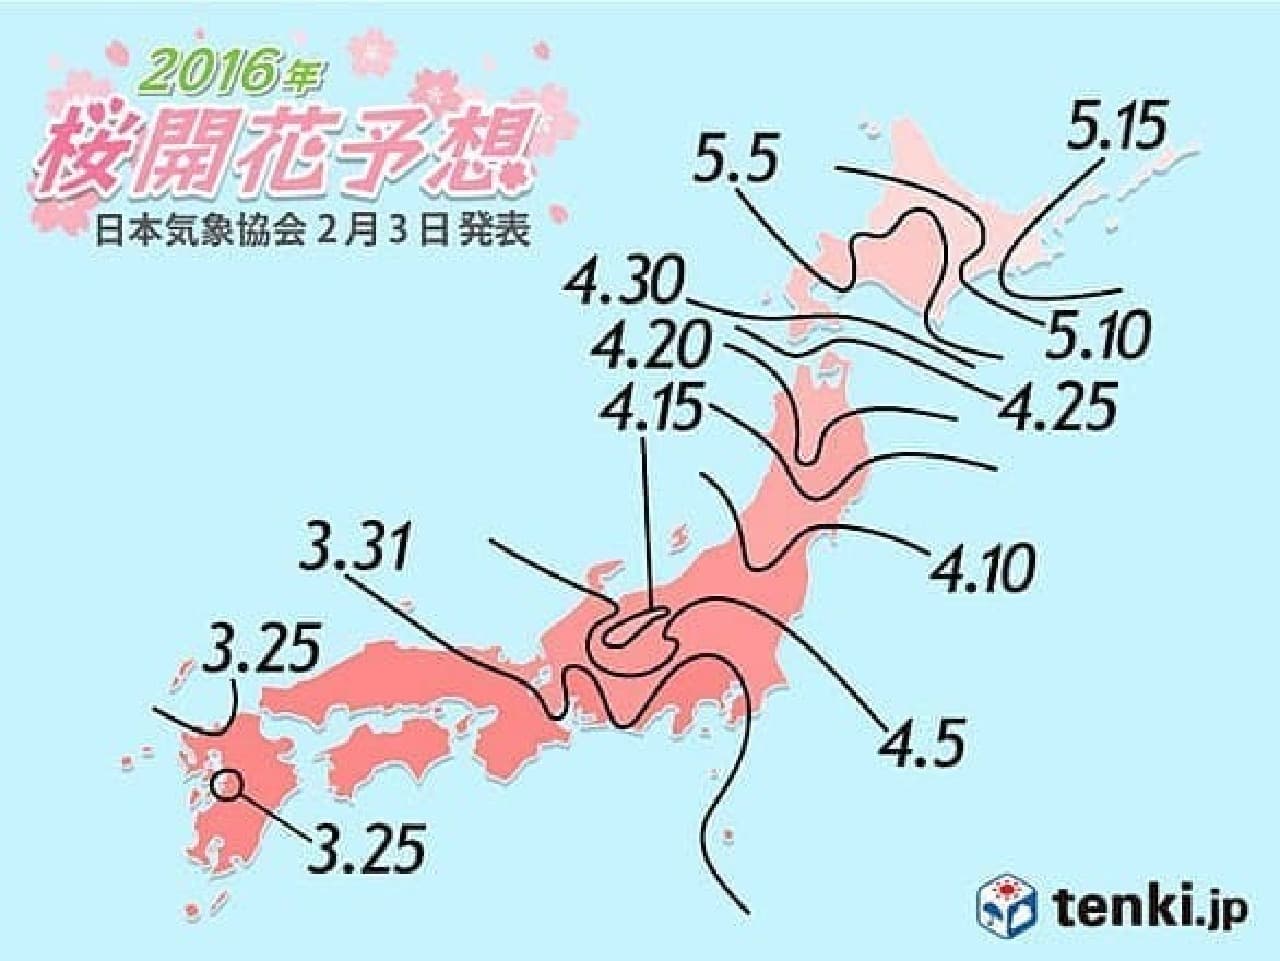 "2016 Sakura Flowering Forecast" (announced on February 3)